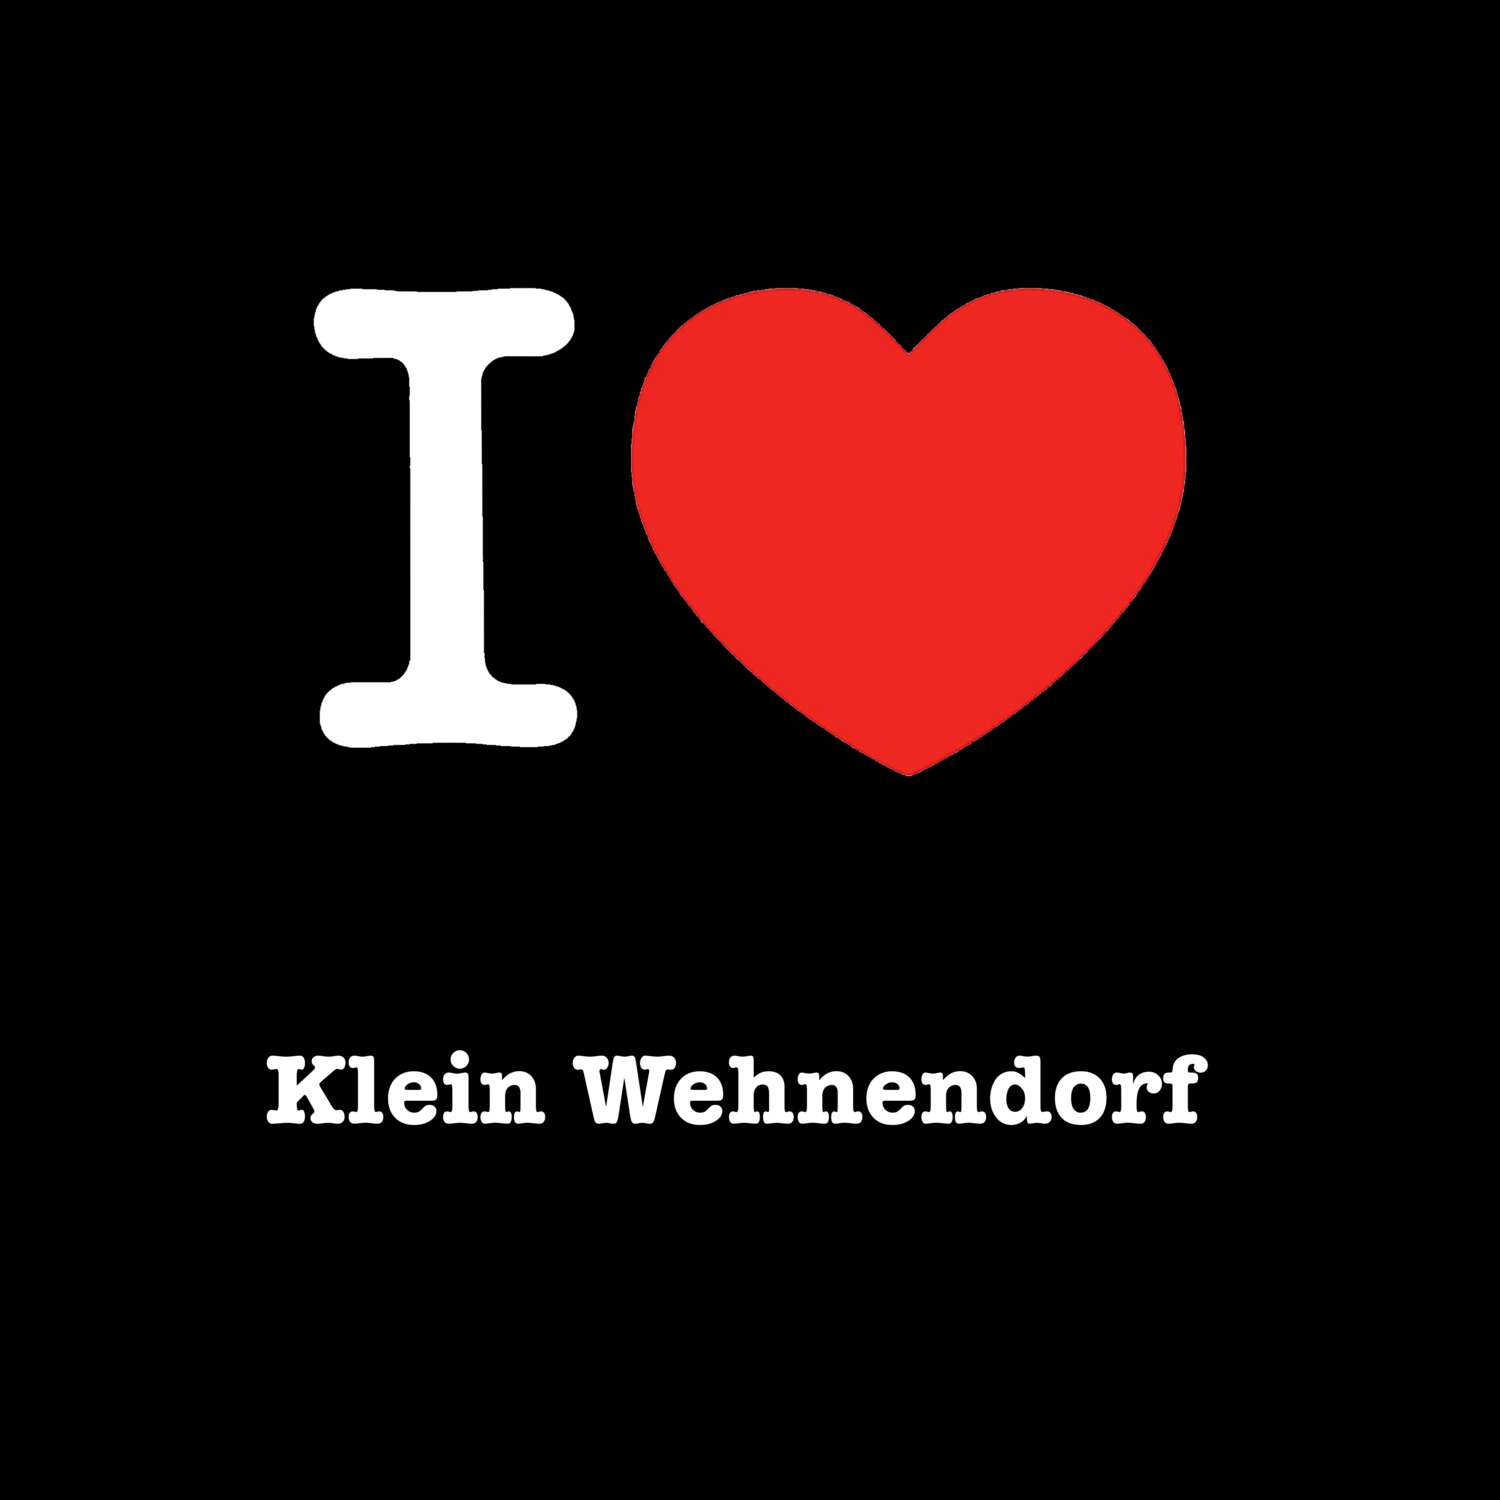 Klein Wehnendorf T-Shirt »I love«